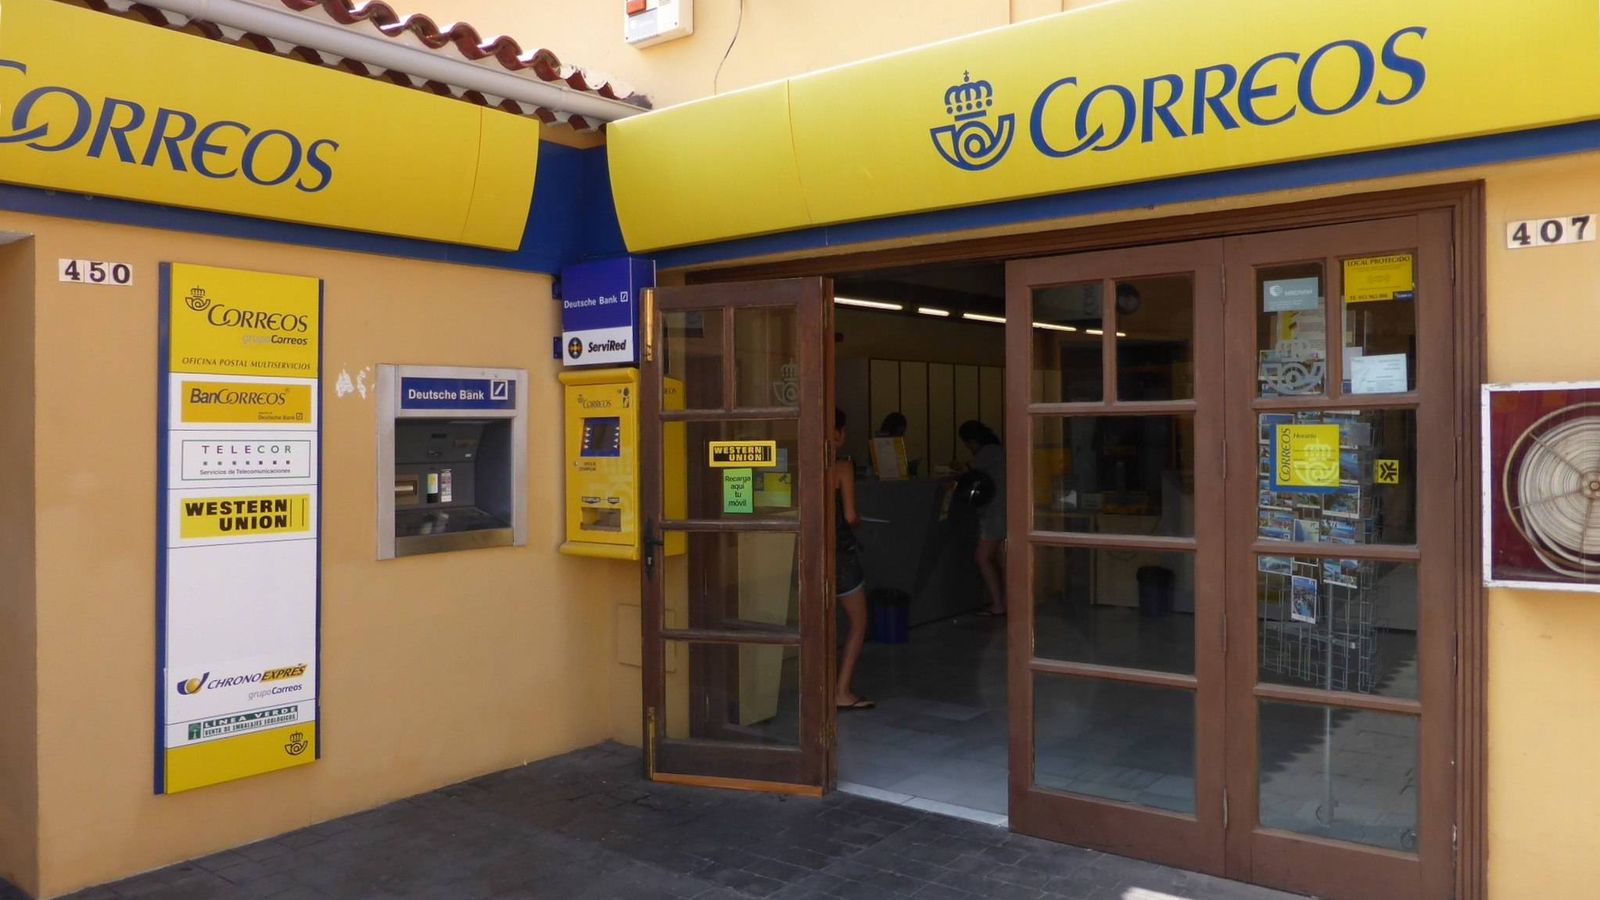 Foto: Oficina de Correos en Tenerife. (Aisano-CC)